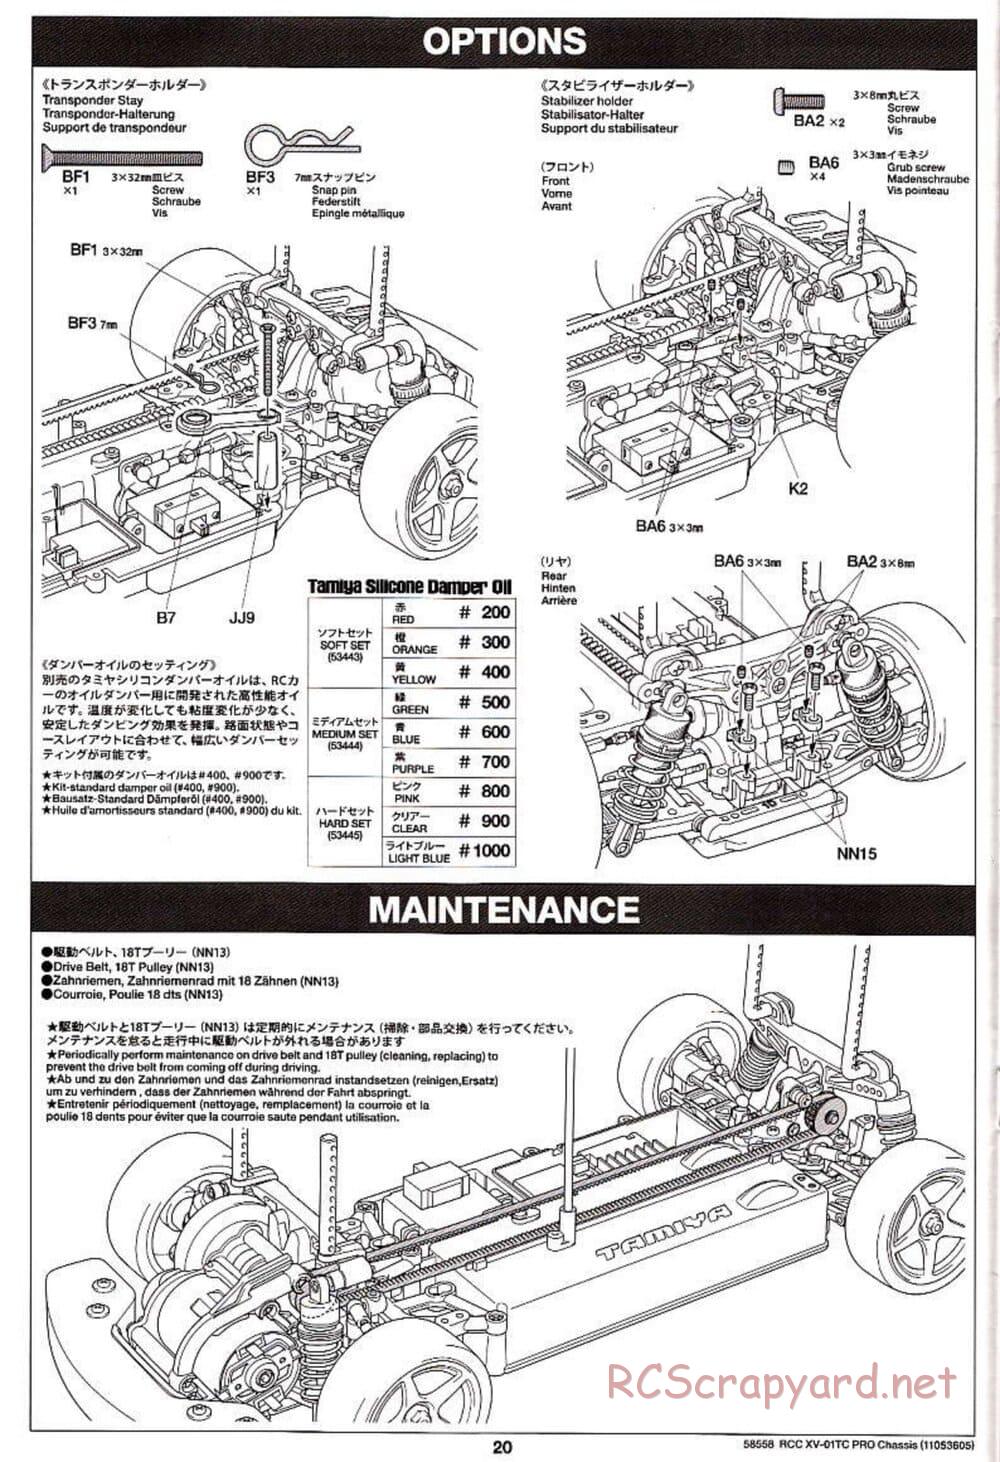 Tamiya - XV-01TC Chassis - Manual - Page 20